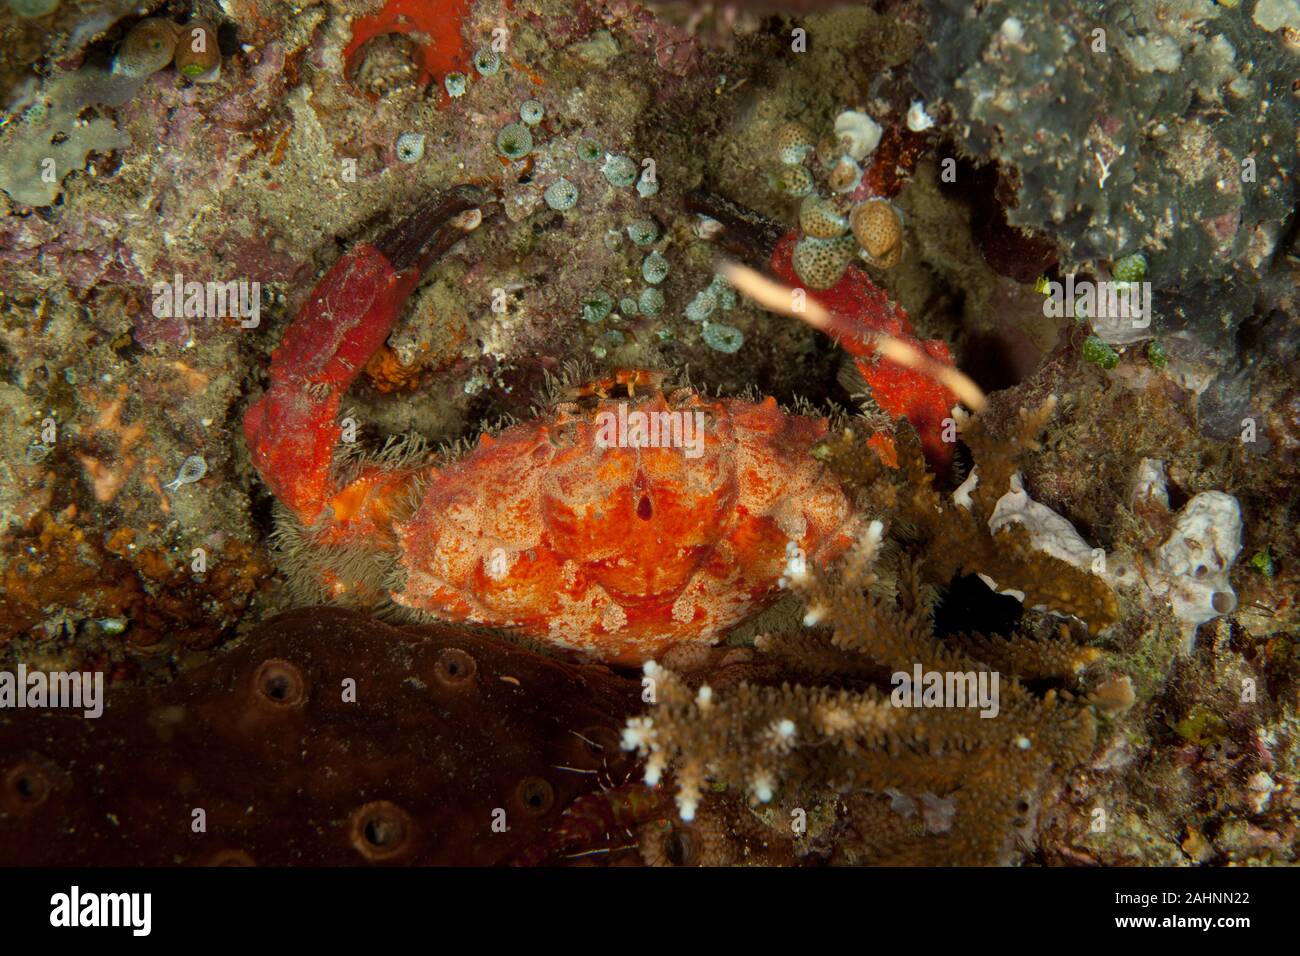 Splendid Round Crab, Etisus splendidus Stock Photo